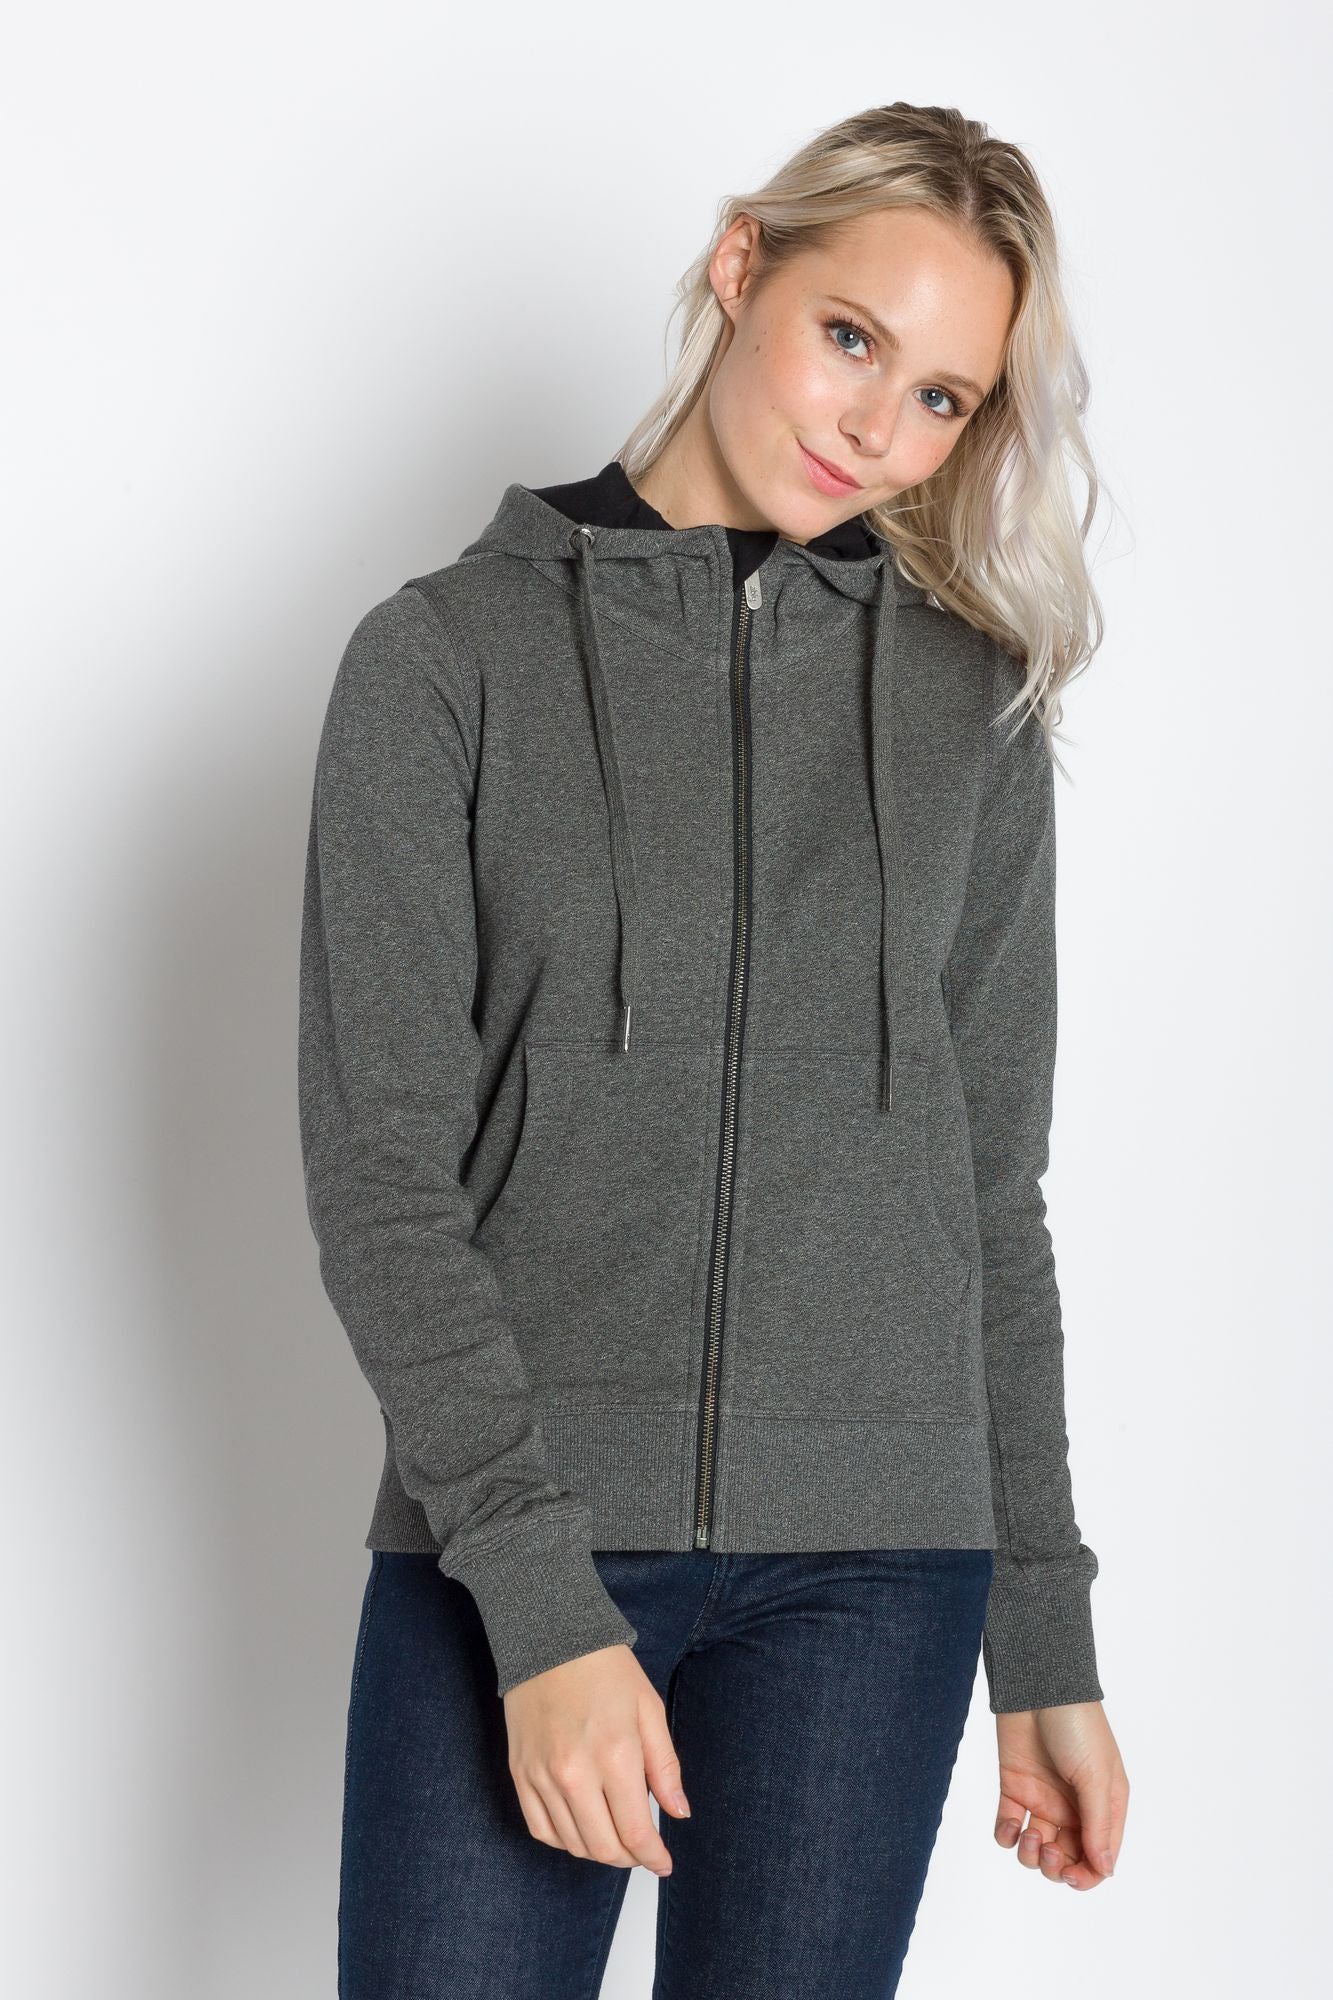 Apphia | Women's Full Zip Hooded Jacket – Ably Apparel